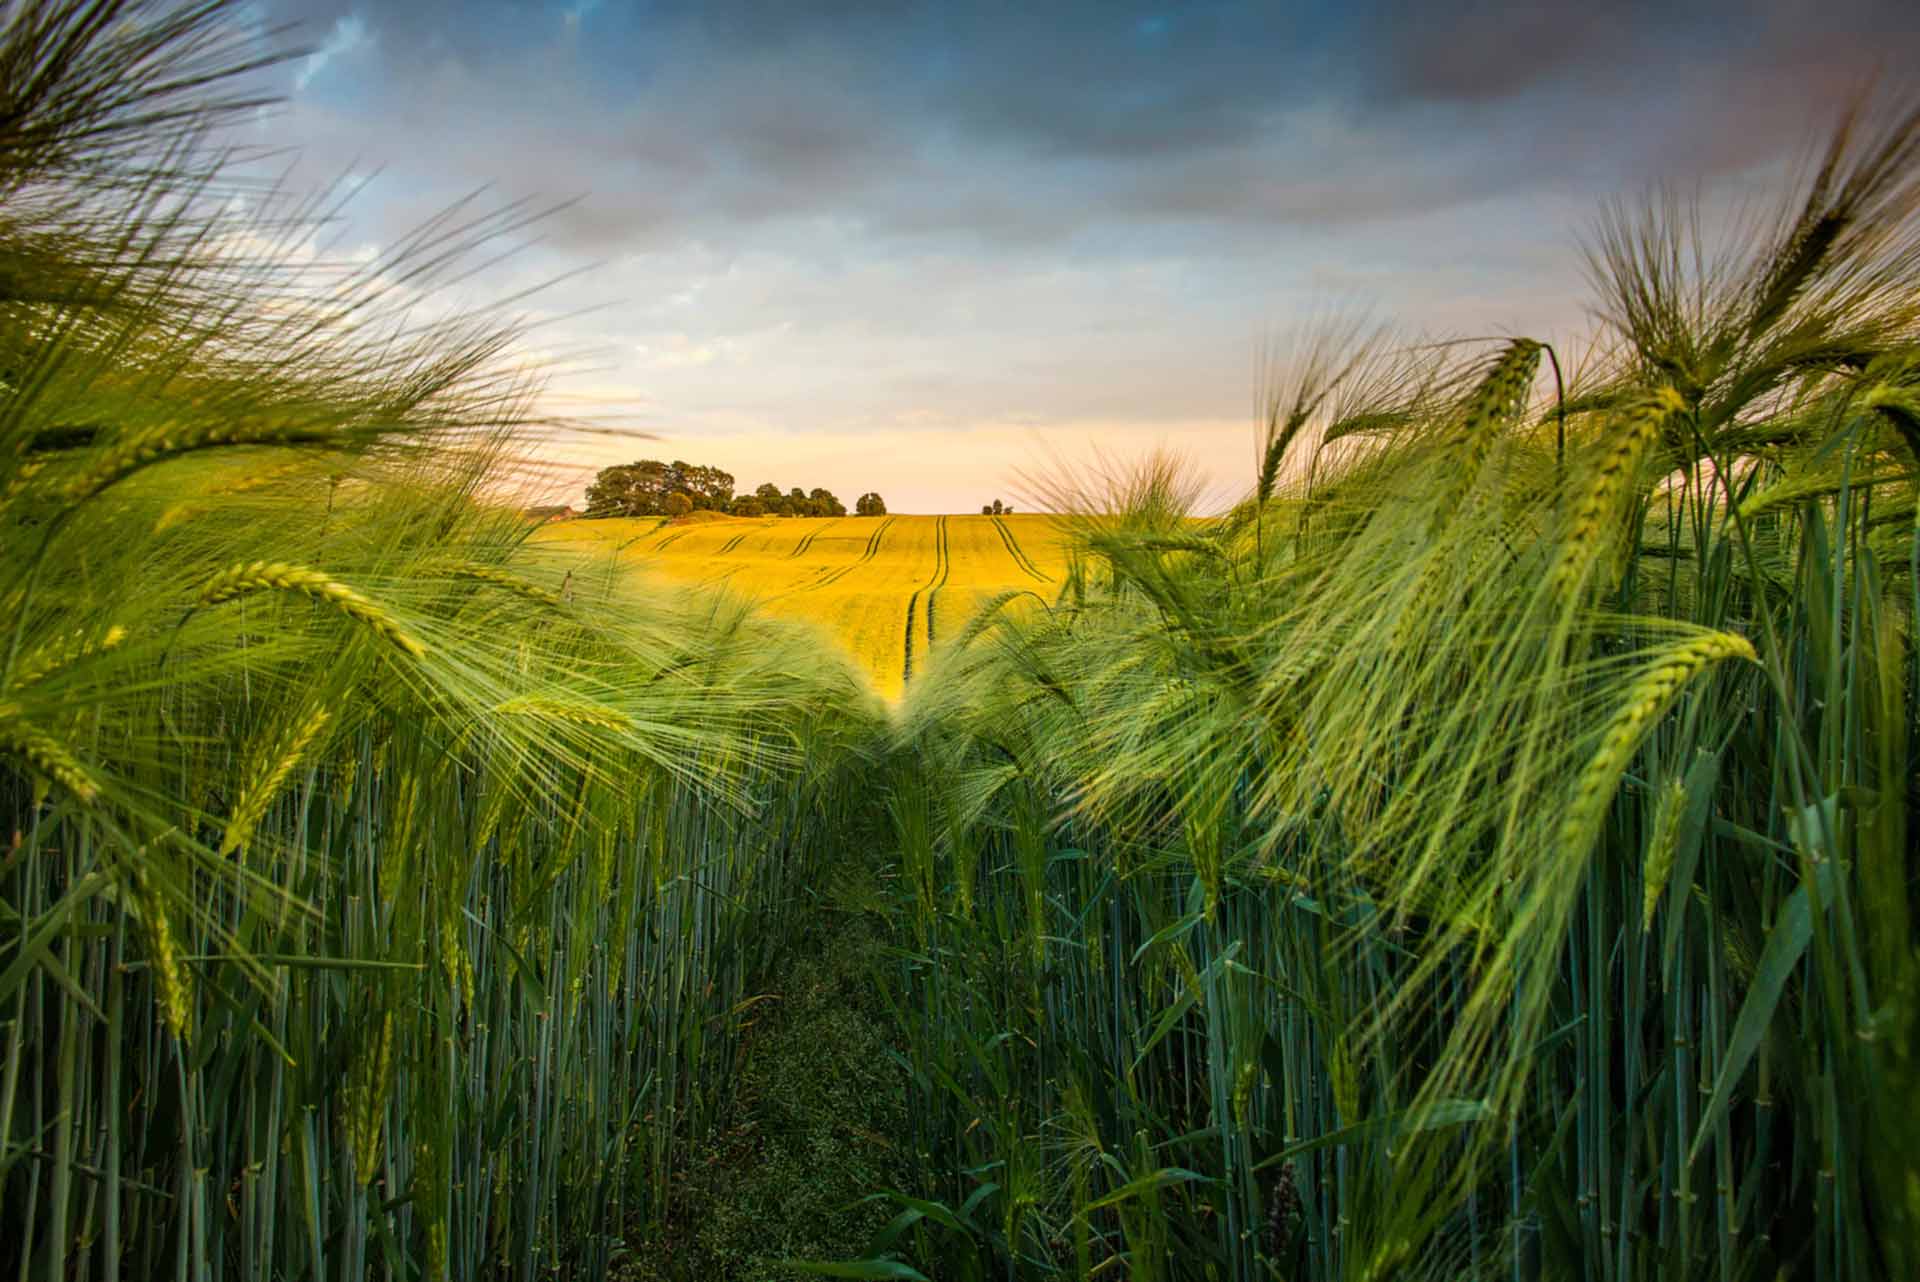 EU wheat surges to record as supplies continue to tighten